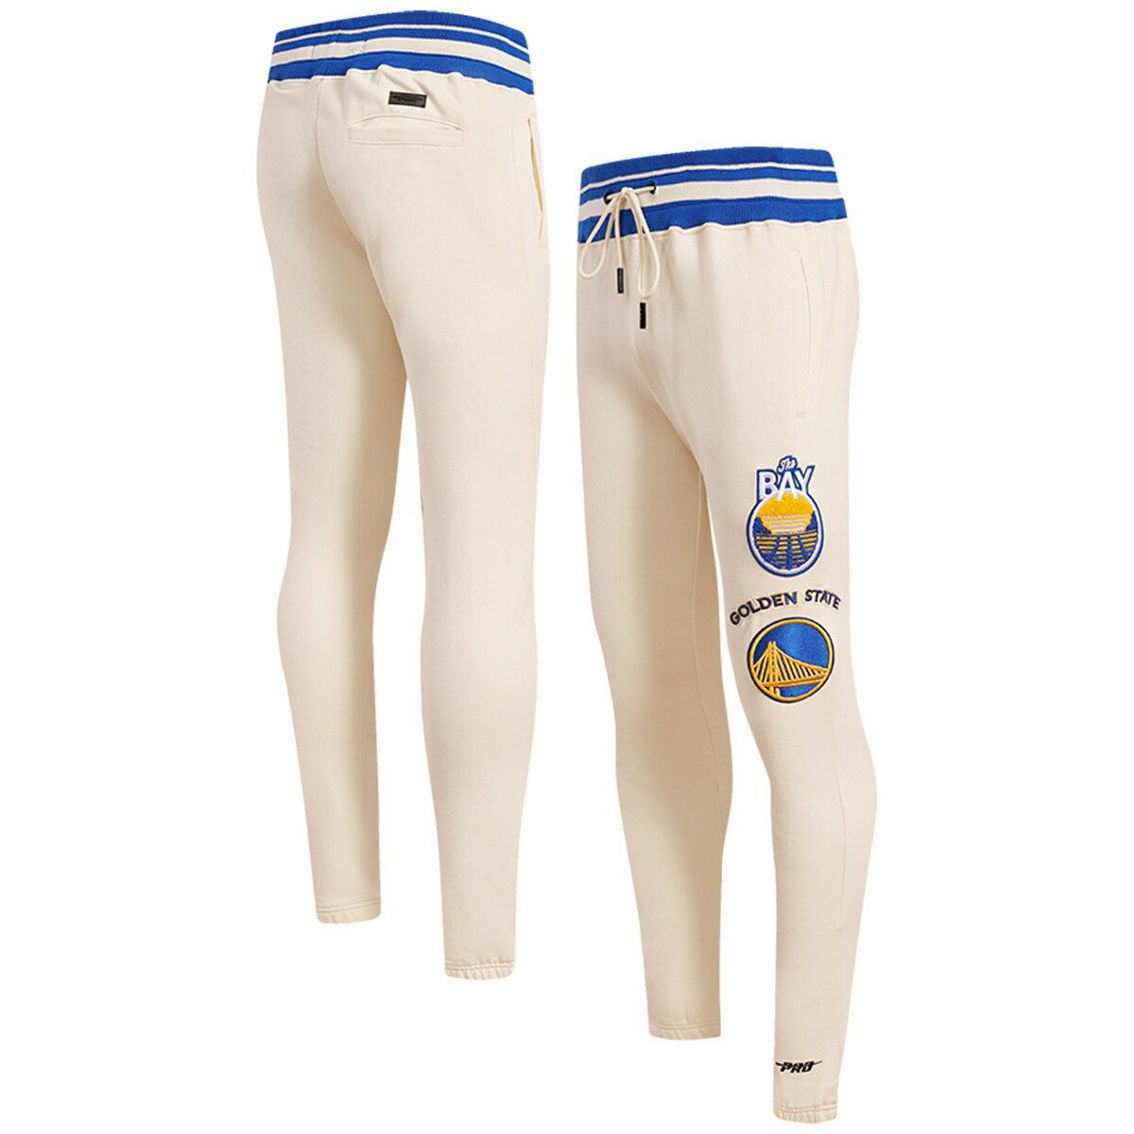 Pro Standard Men's Cream Golden State Warriors Retro Classic Fleece Sweatpants - Image 2 of 4